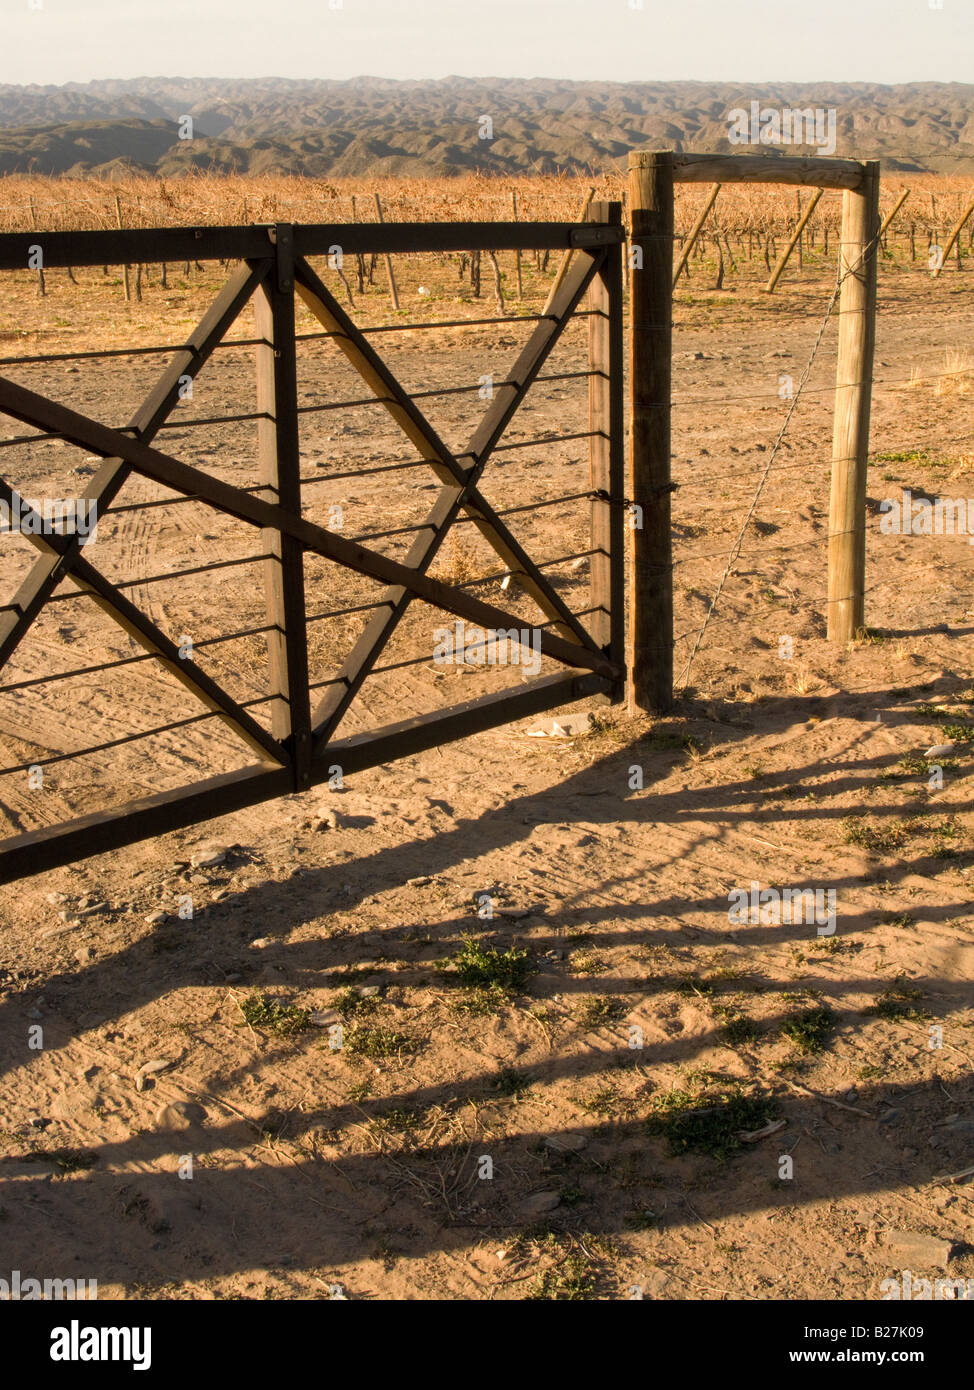 Tranquera, una puerta en la entrada de la mayoría de los ranchos y granjas en Argentina Foto de stock